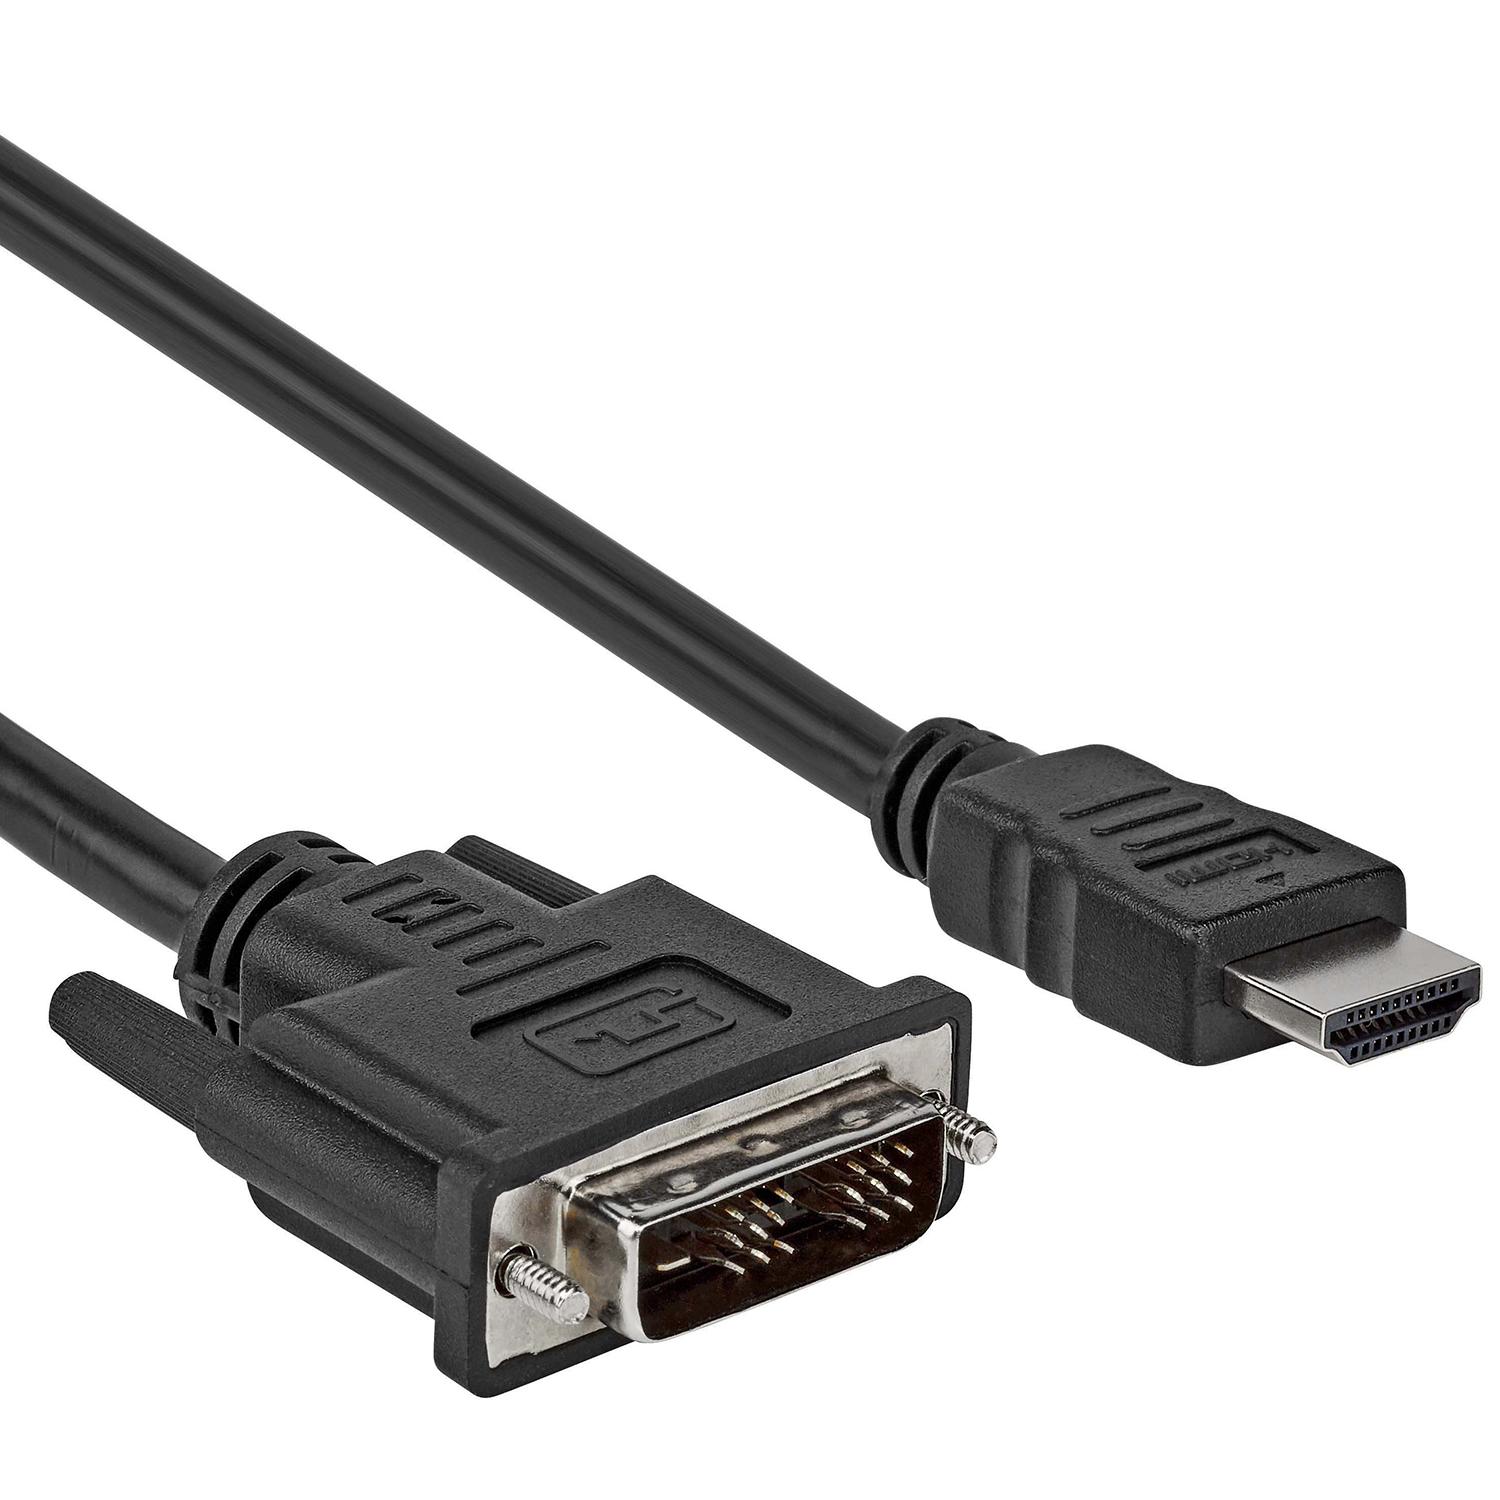 Vervreemding reputatie gewoon HDMI kabel 6 meter - Allekabels.nl - Morgen in huis